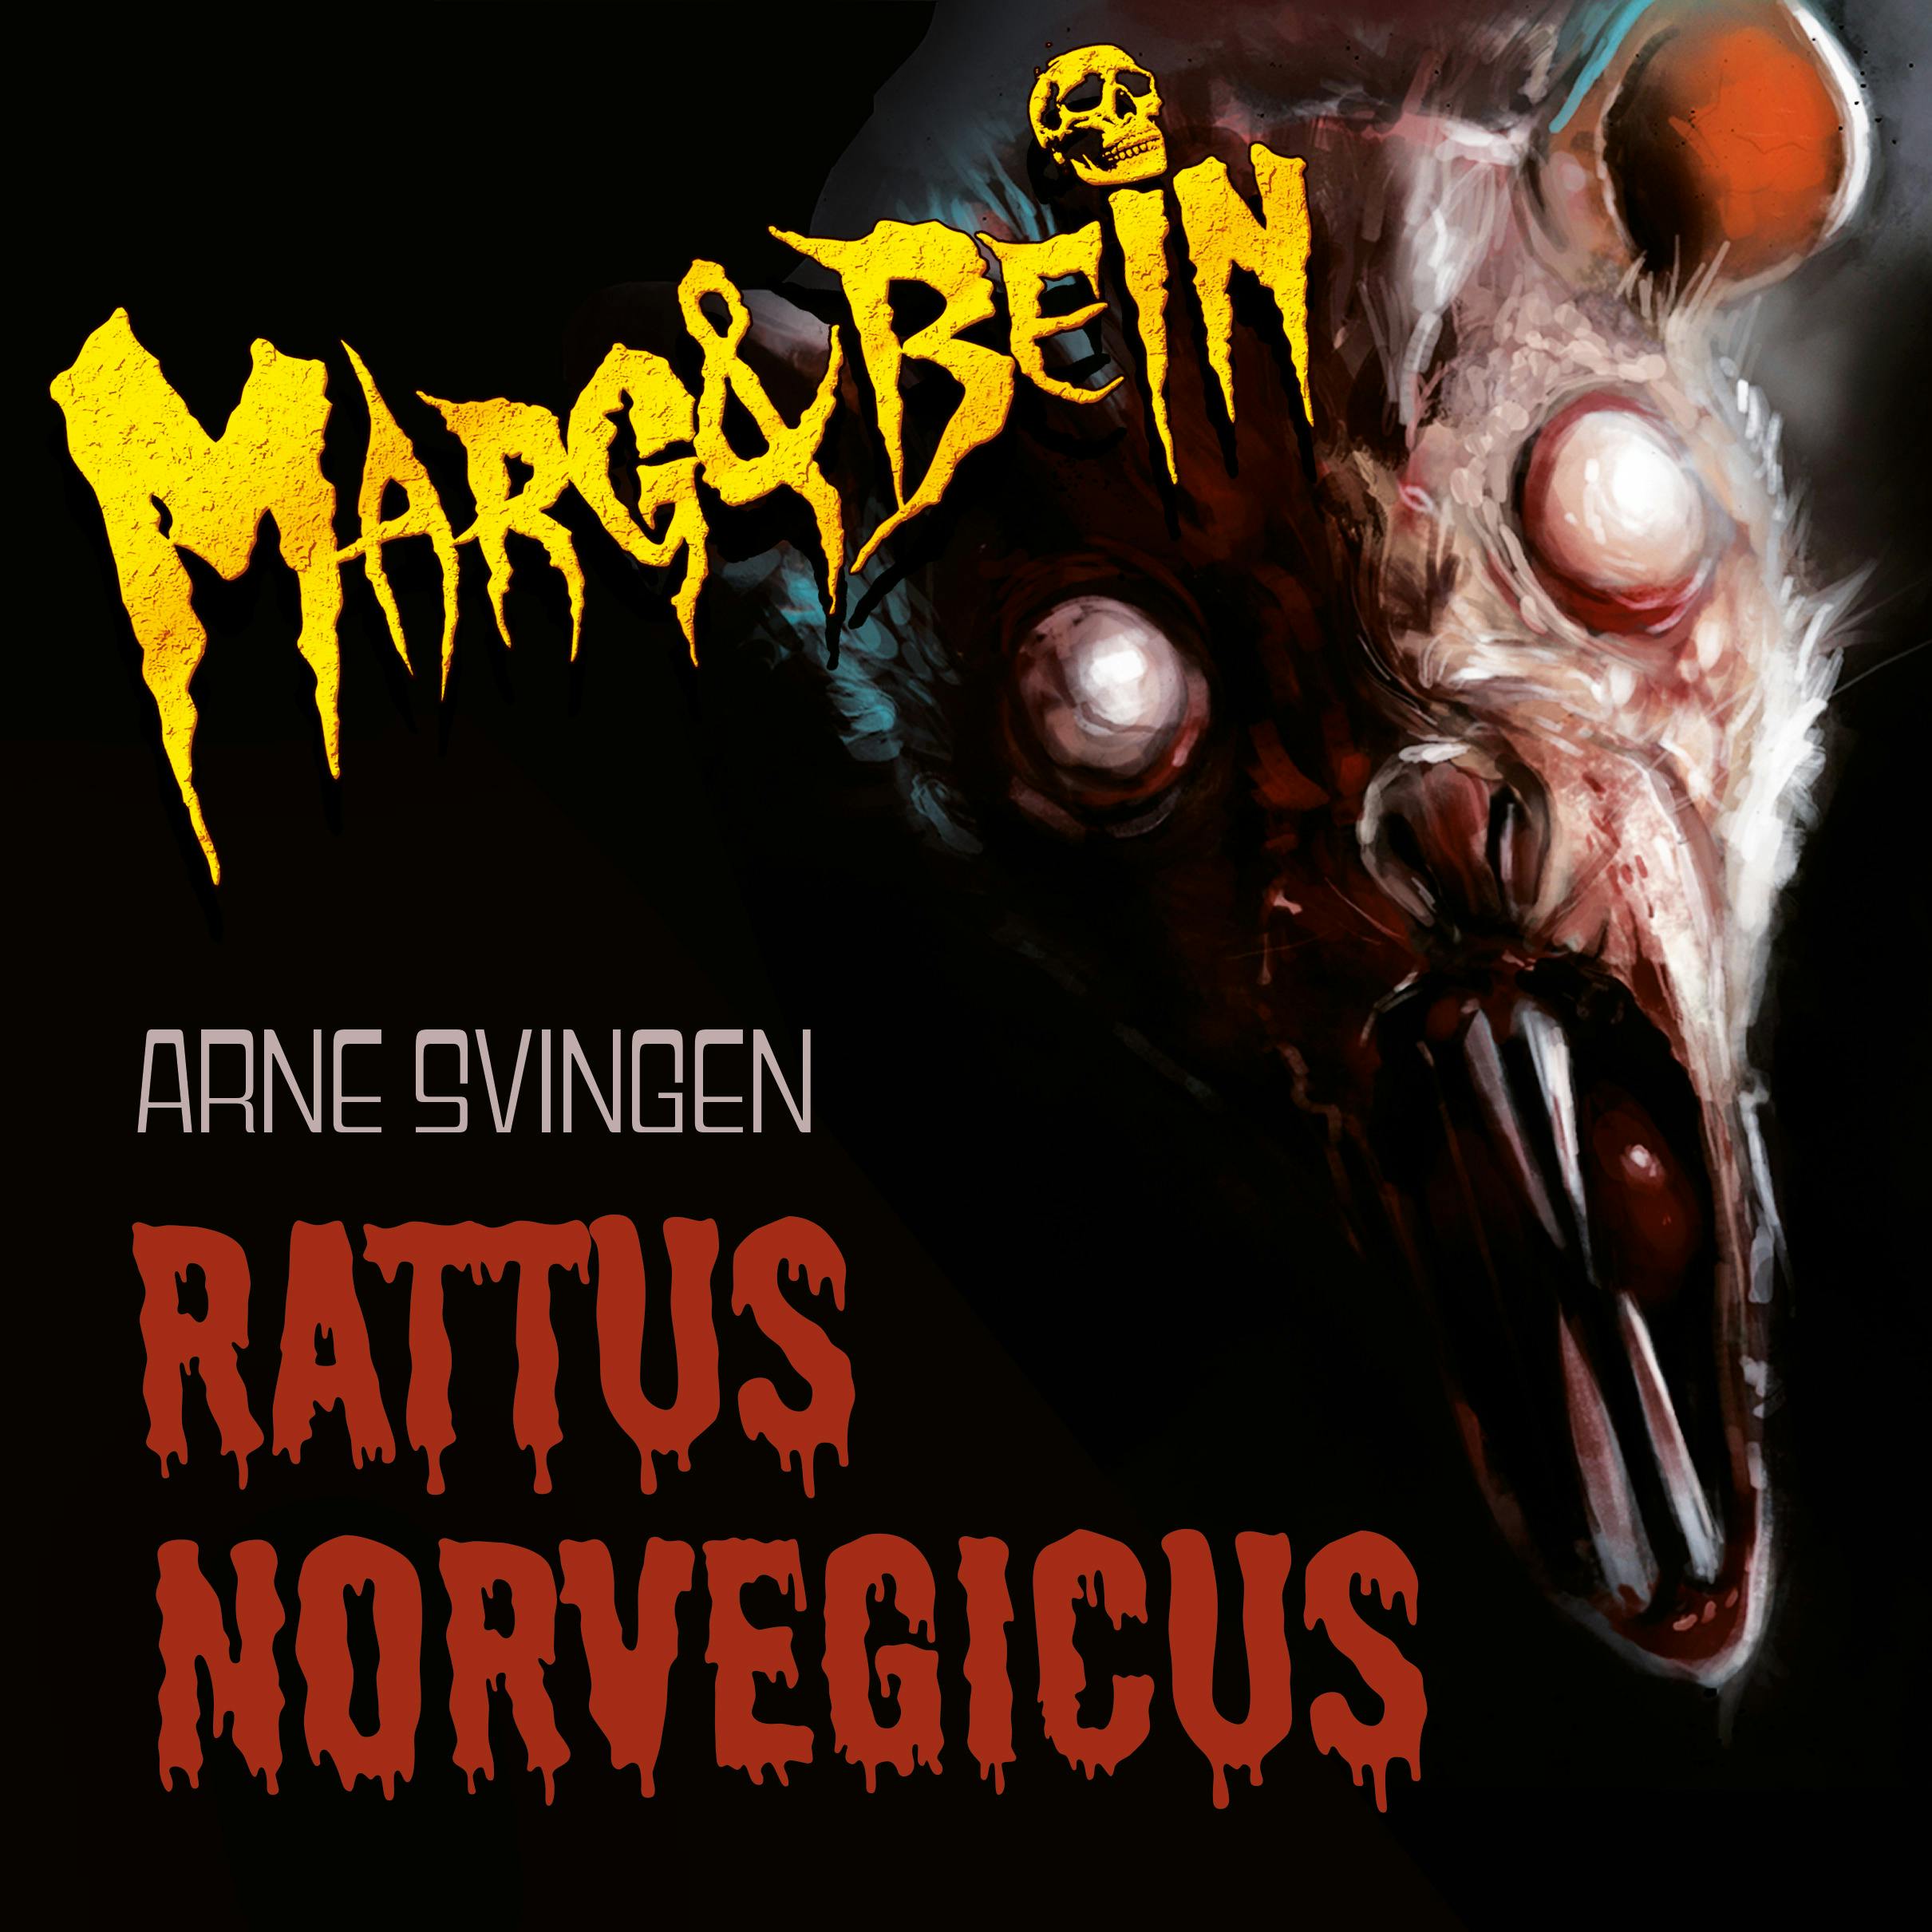 Rattus norvegicus - undefined